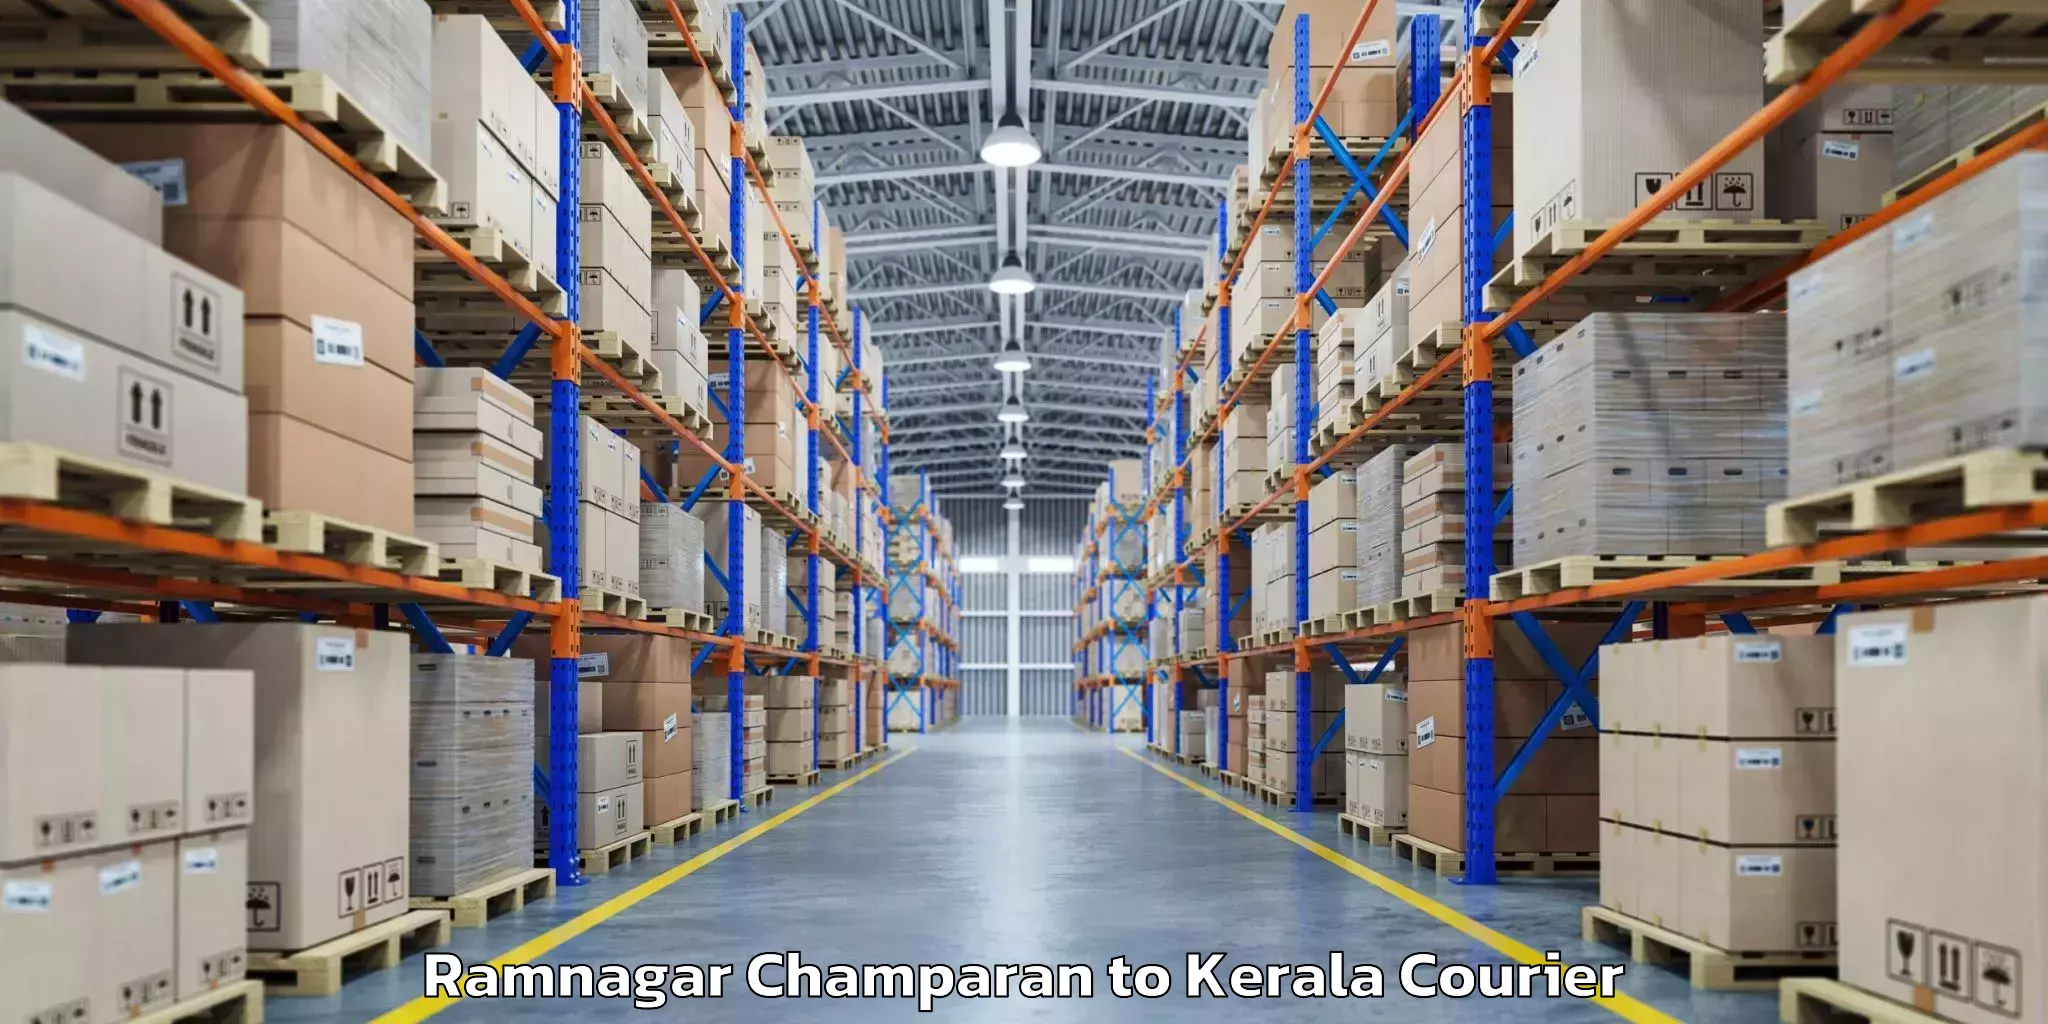 Baggage courier FAQs Ramnagar Champaran to Kerala